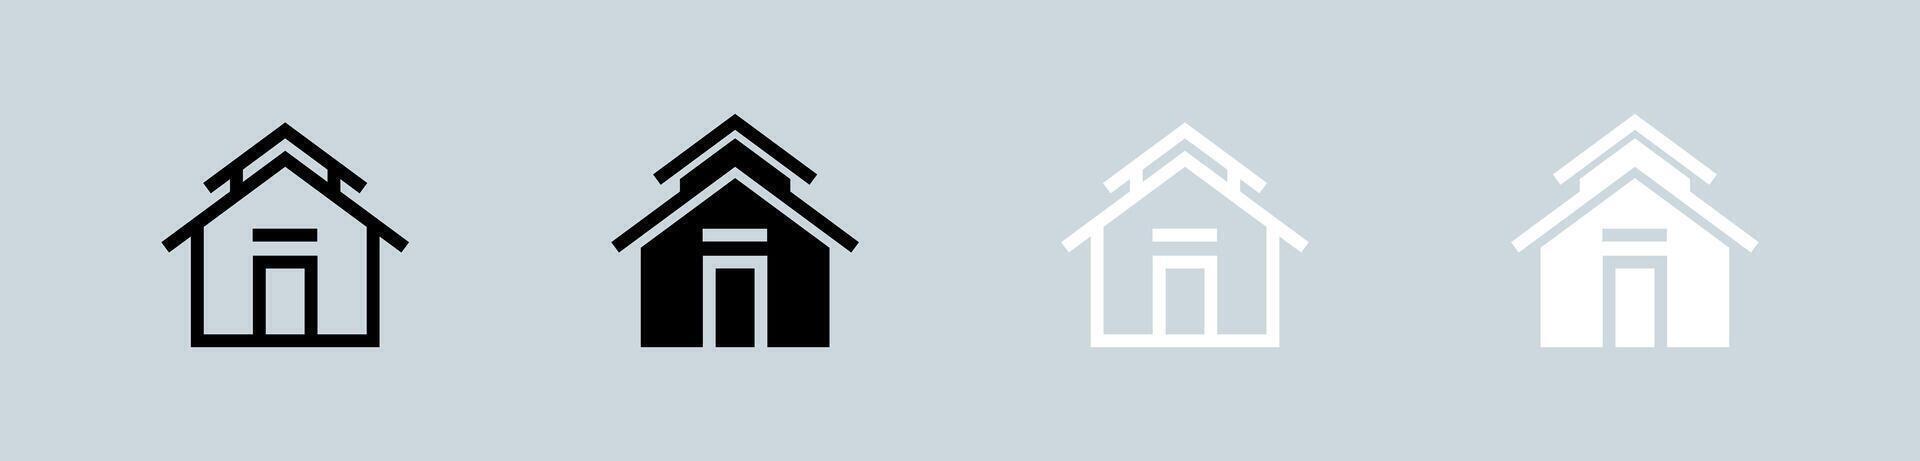 hogar botón icono conjunto en negro y blanco. casa señales vector ilustración.